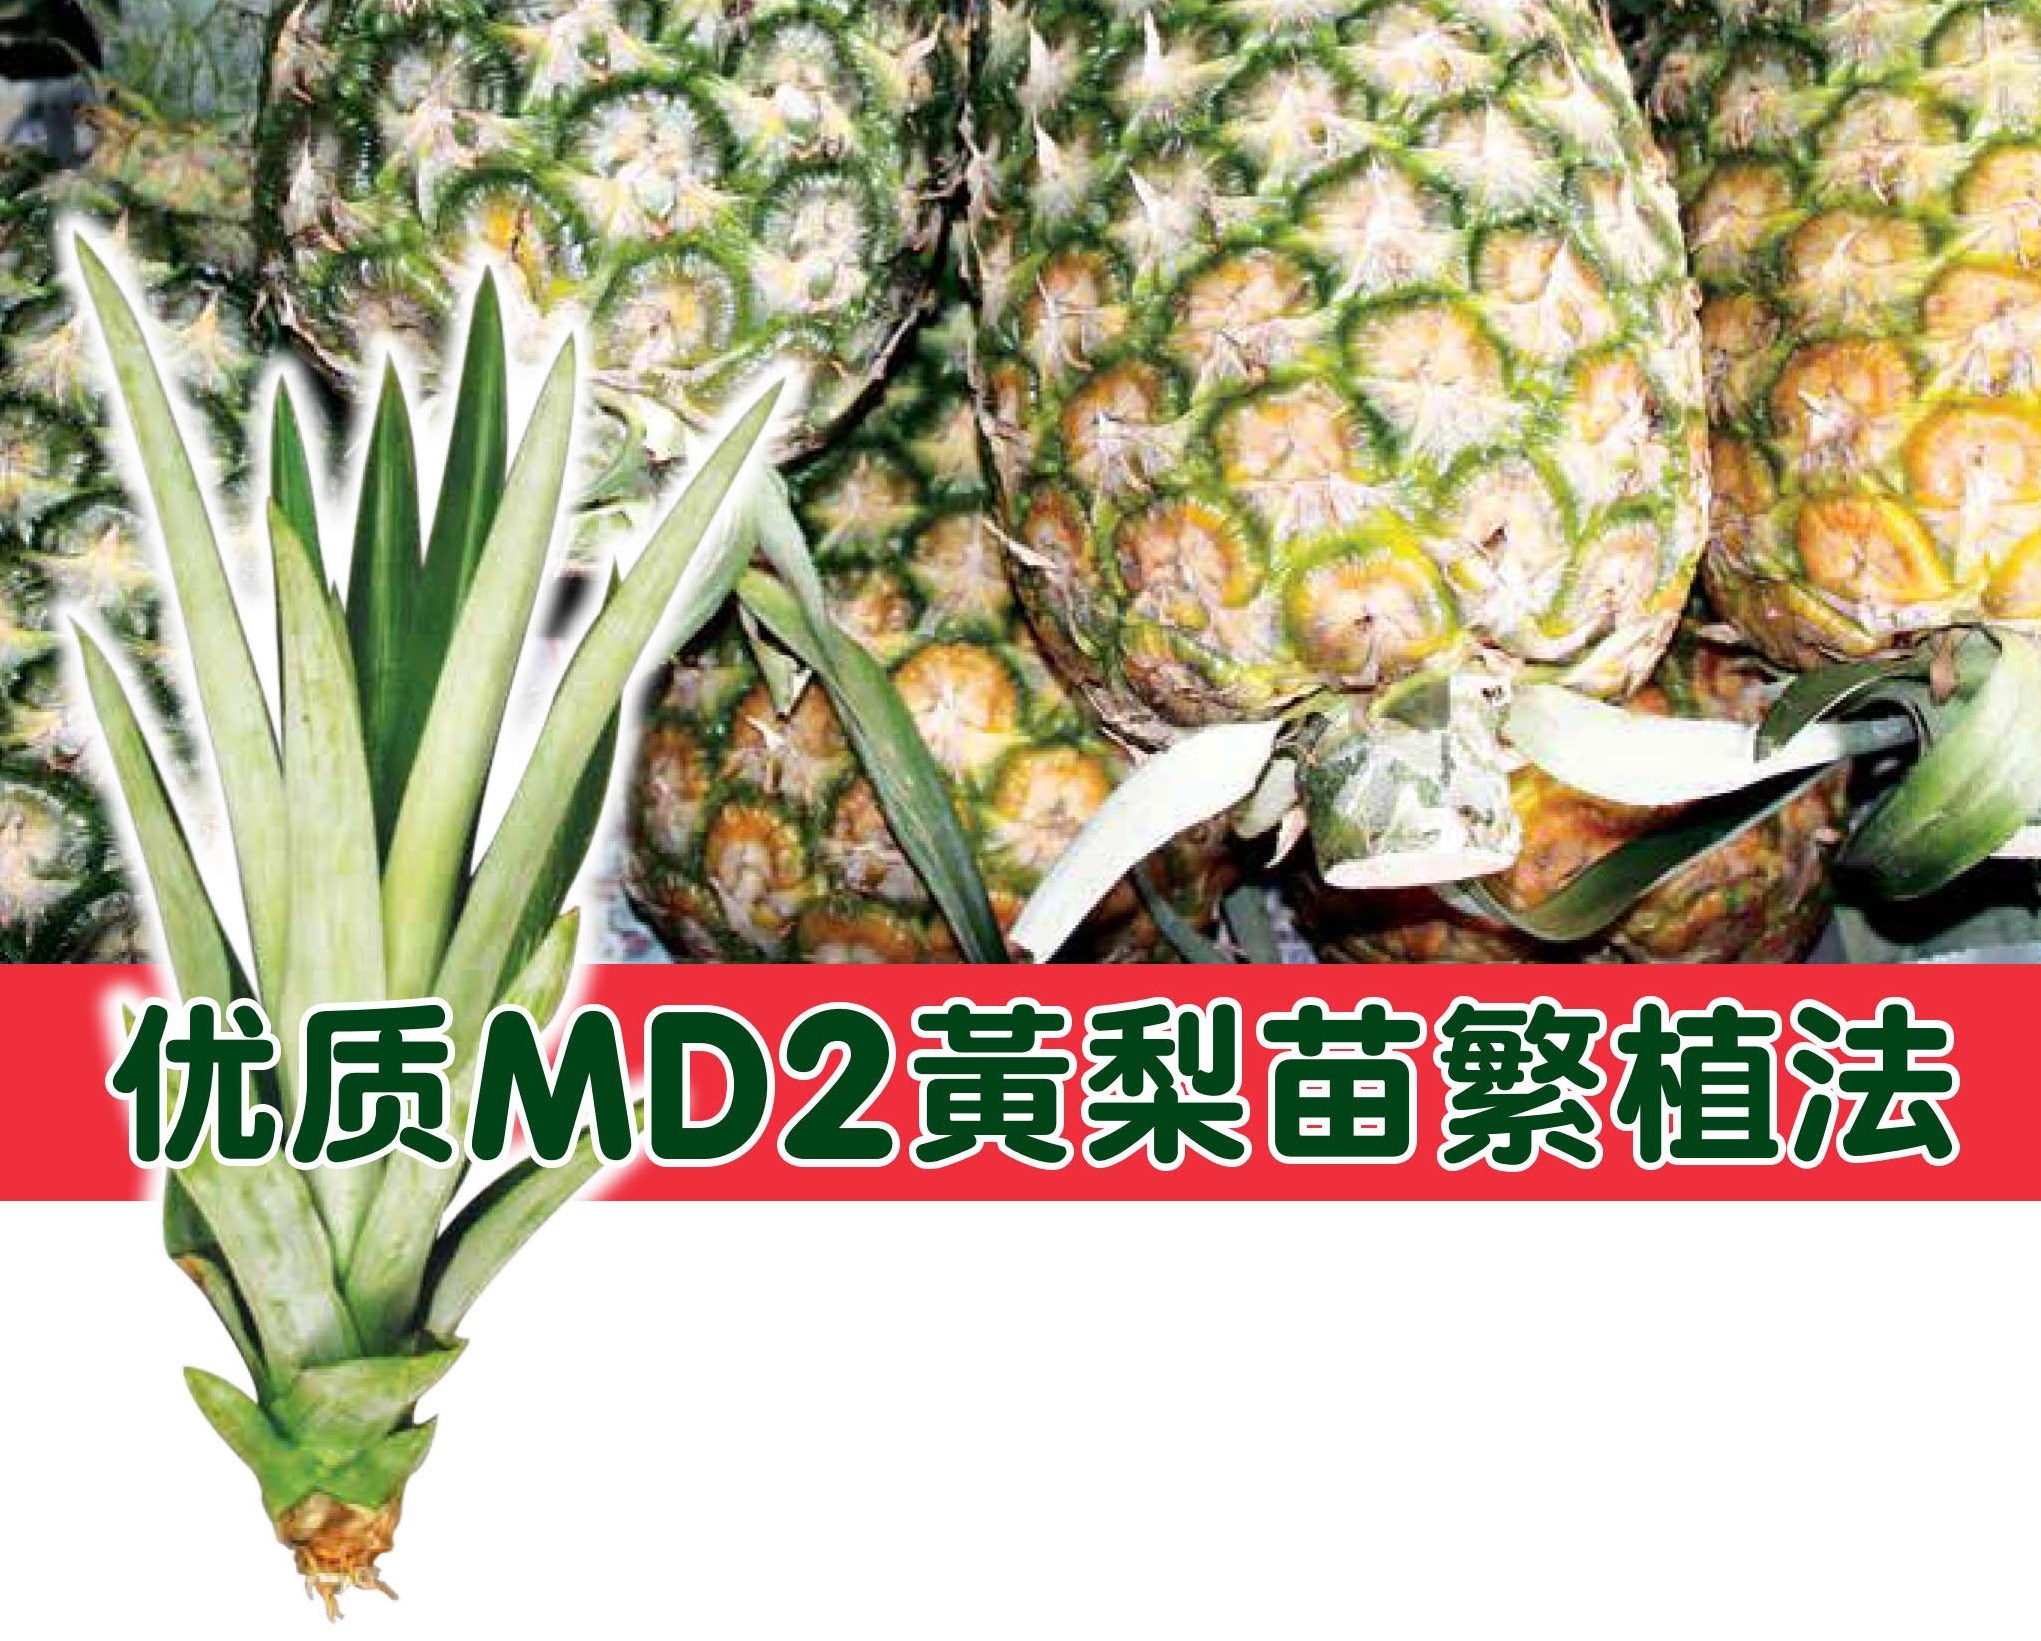 优质MD2黄梨苗繁植法 - 农牧世界